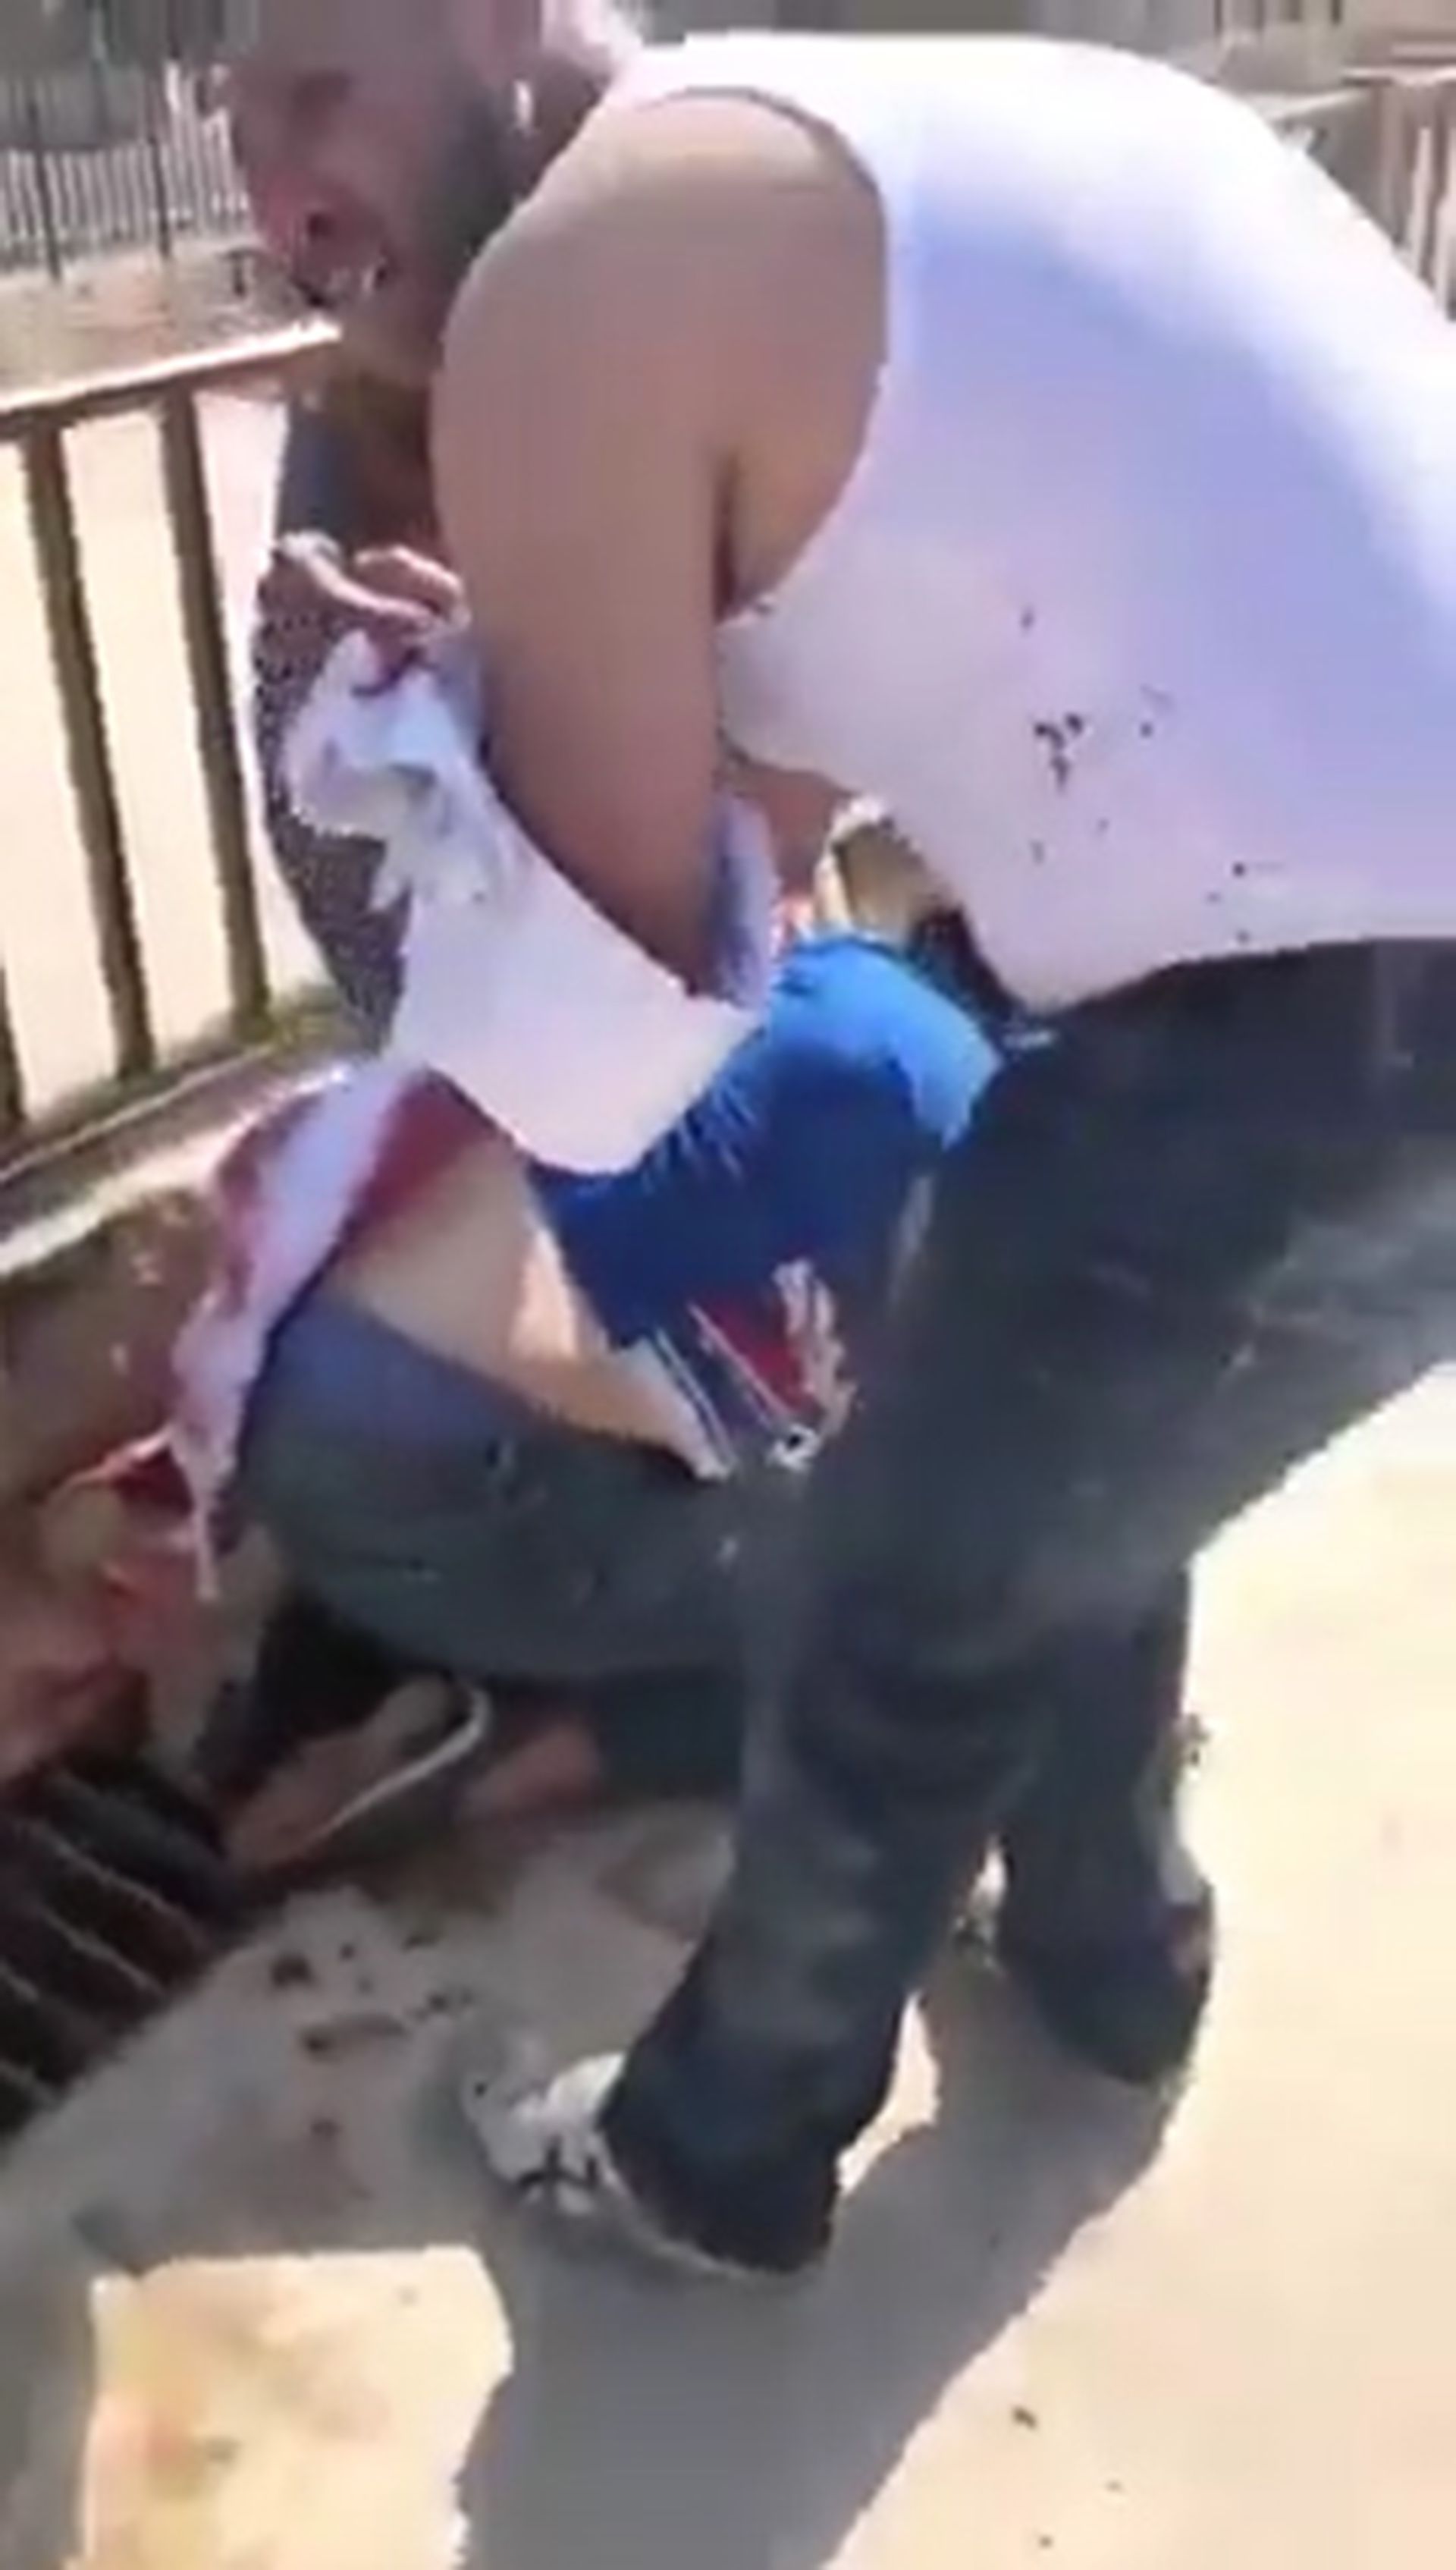 En un vídeo difundido en las redes sociales, se puede ver a una mujer tendida en el suelo bocabajo con una herida en la espalda (Foto: Twitter)